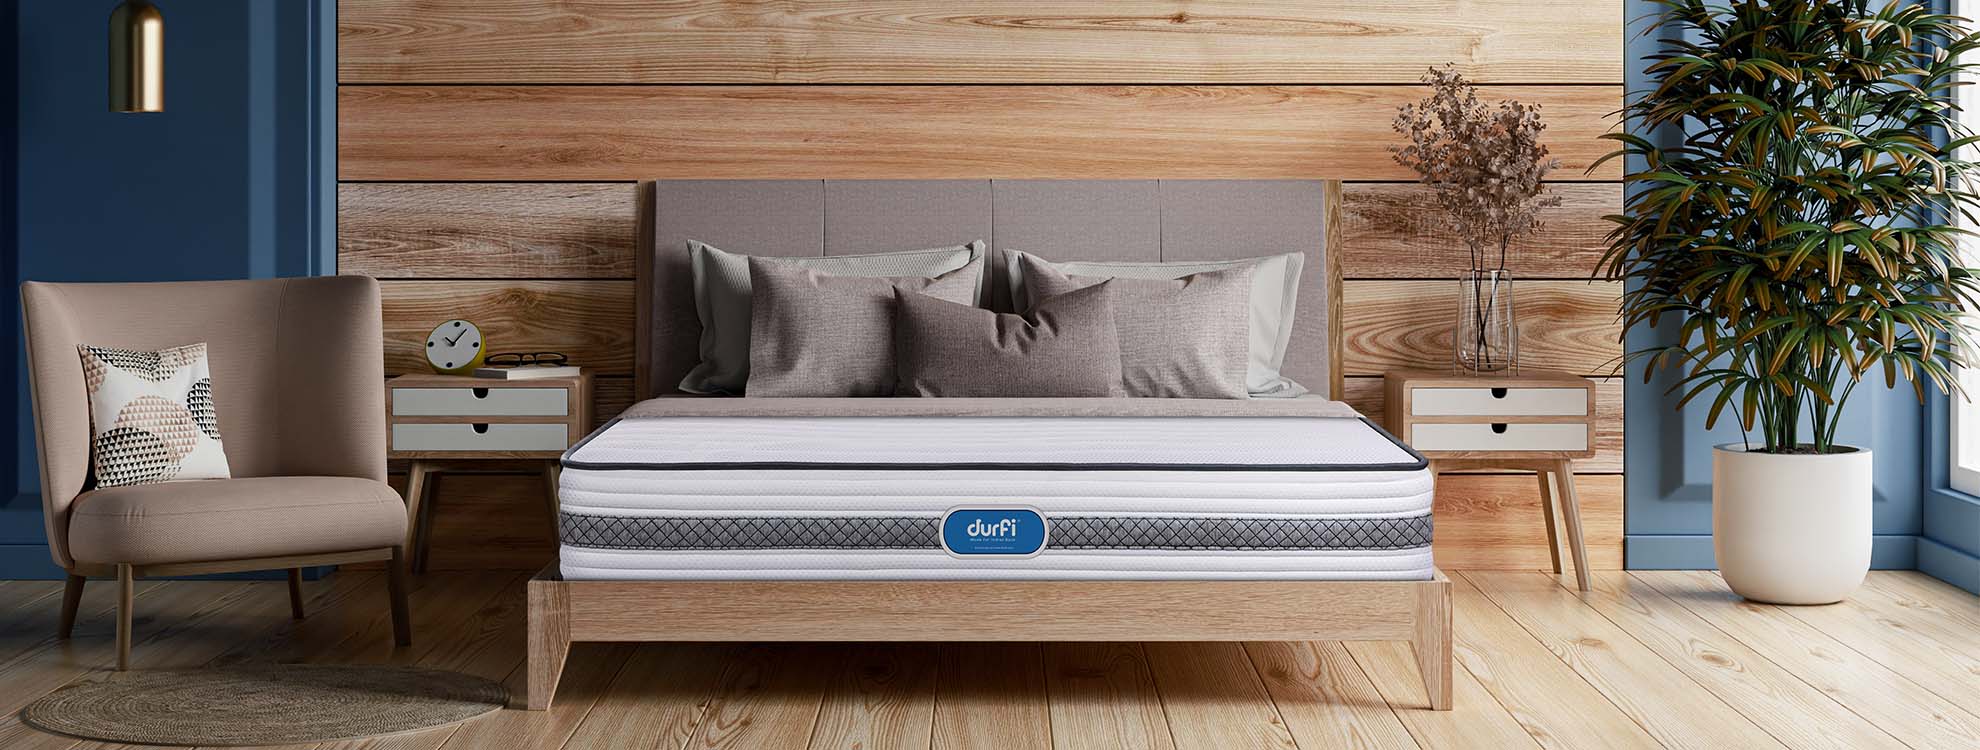 durfi mattress